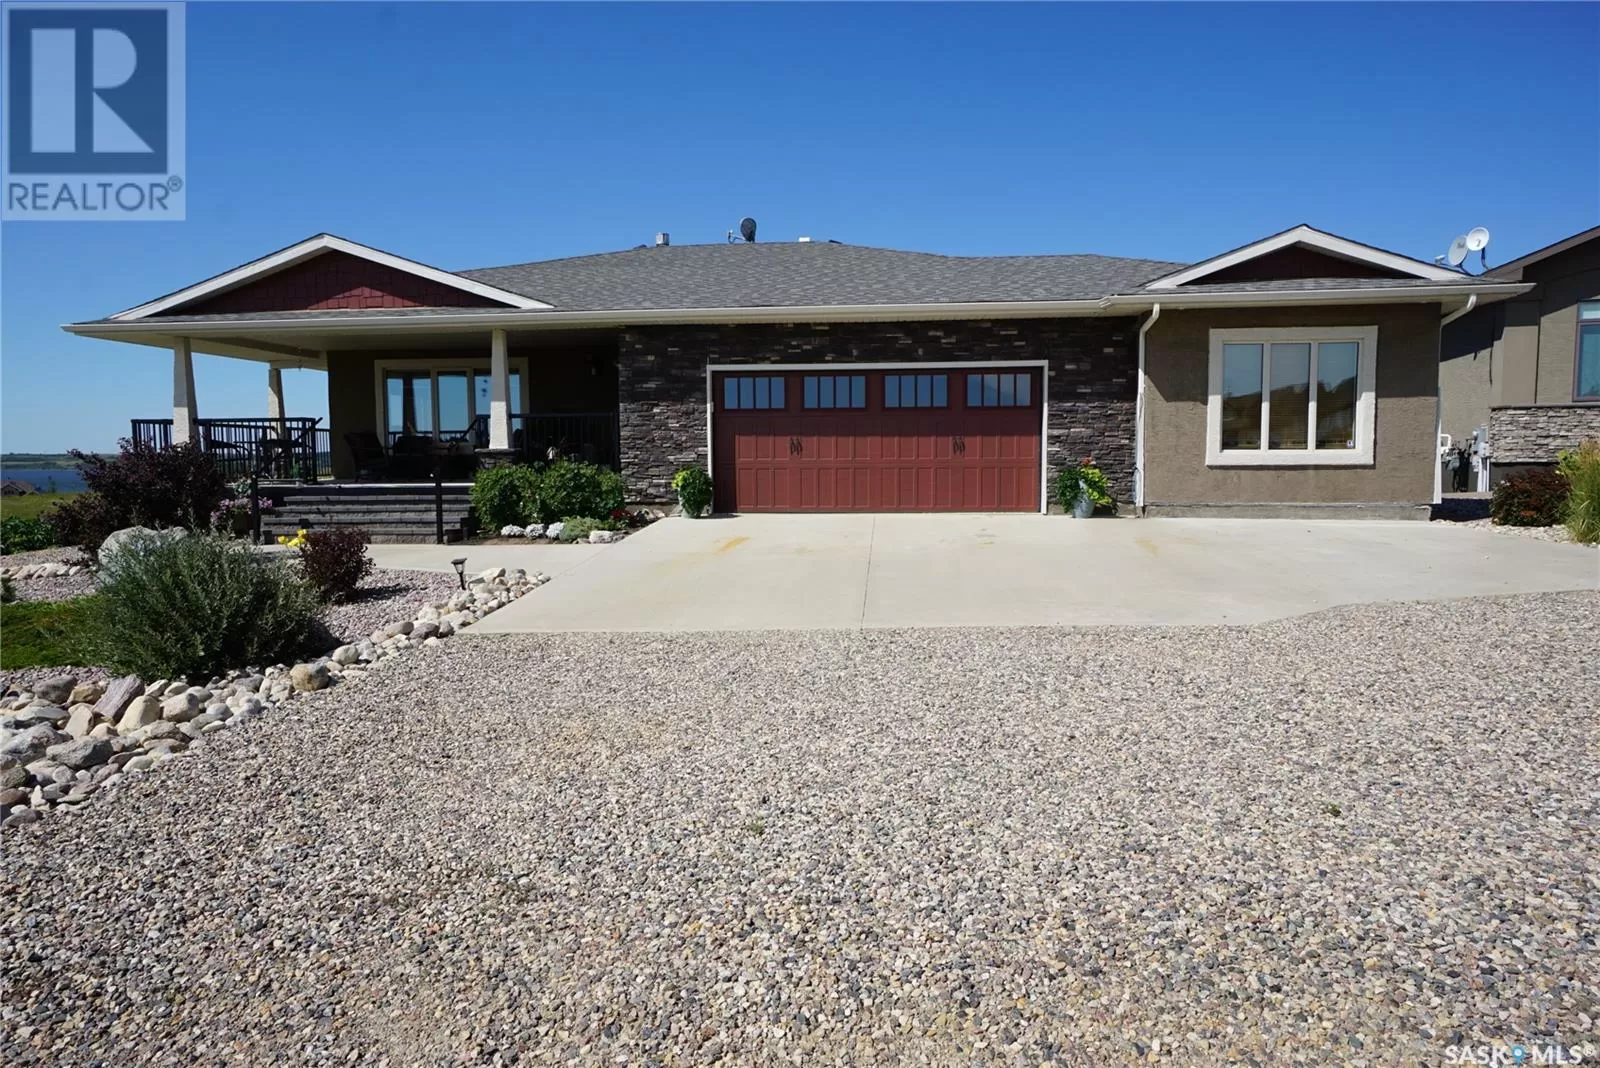 House for rent: 11 Vista Del Sol, Sun Dale, Saskatchewan S0G 4L0